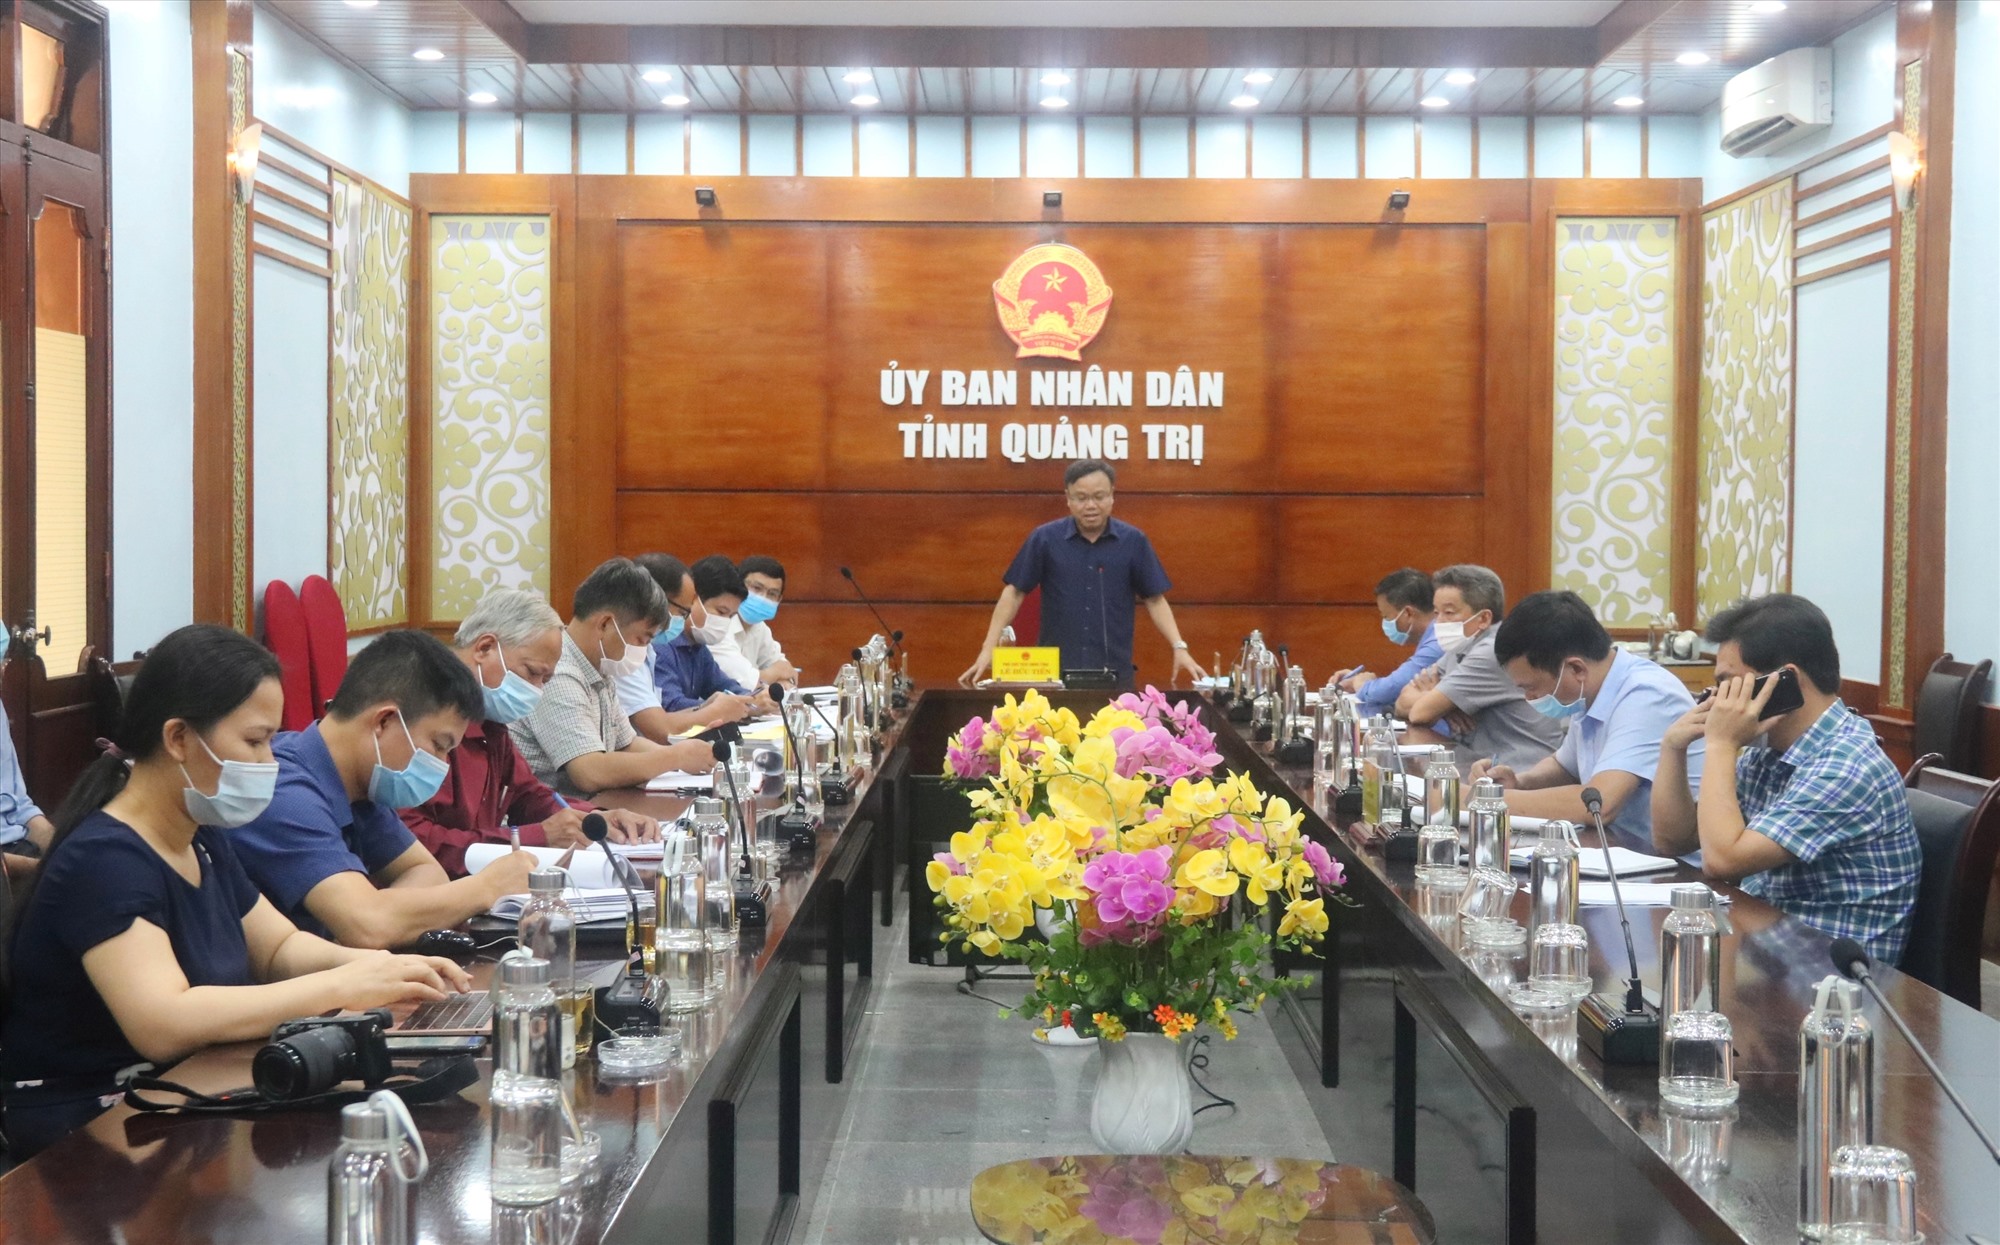 Phó Chủ tịch UBND tỉnh Lê Đức Tiến mong muốn Dự án nâng cấp, mở rộng Quốc lộ 9 đoạn từ Cảng Cửa Việt đến Quốc lộ 1 sớm được triển khai theo kế hoạch - Ảnh: N.B